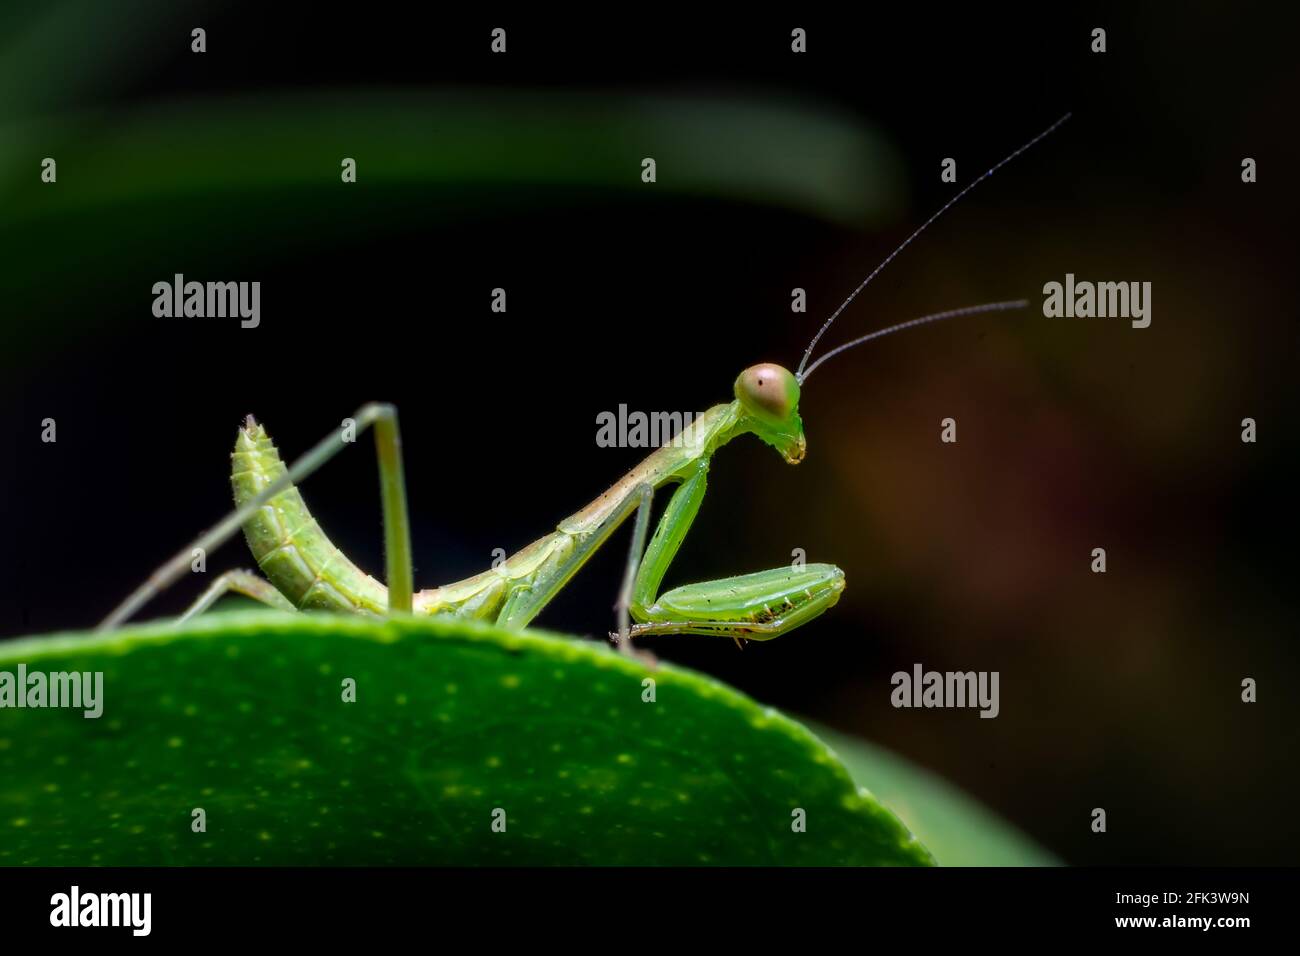 Insetto di mantis di preghiera sulla foglia verde di pianta. Questi insetti sono stati utilizzati come parte di un programma integrato di gestione dei parassiti per il controllo biologico. Foto Stock